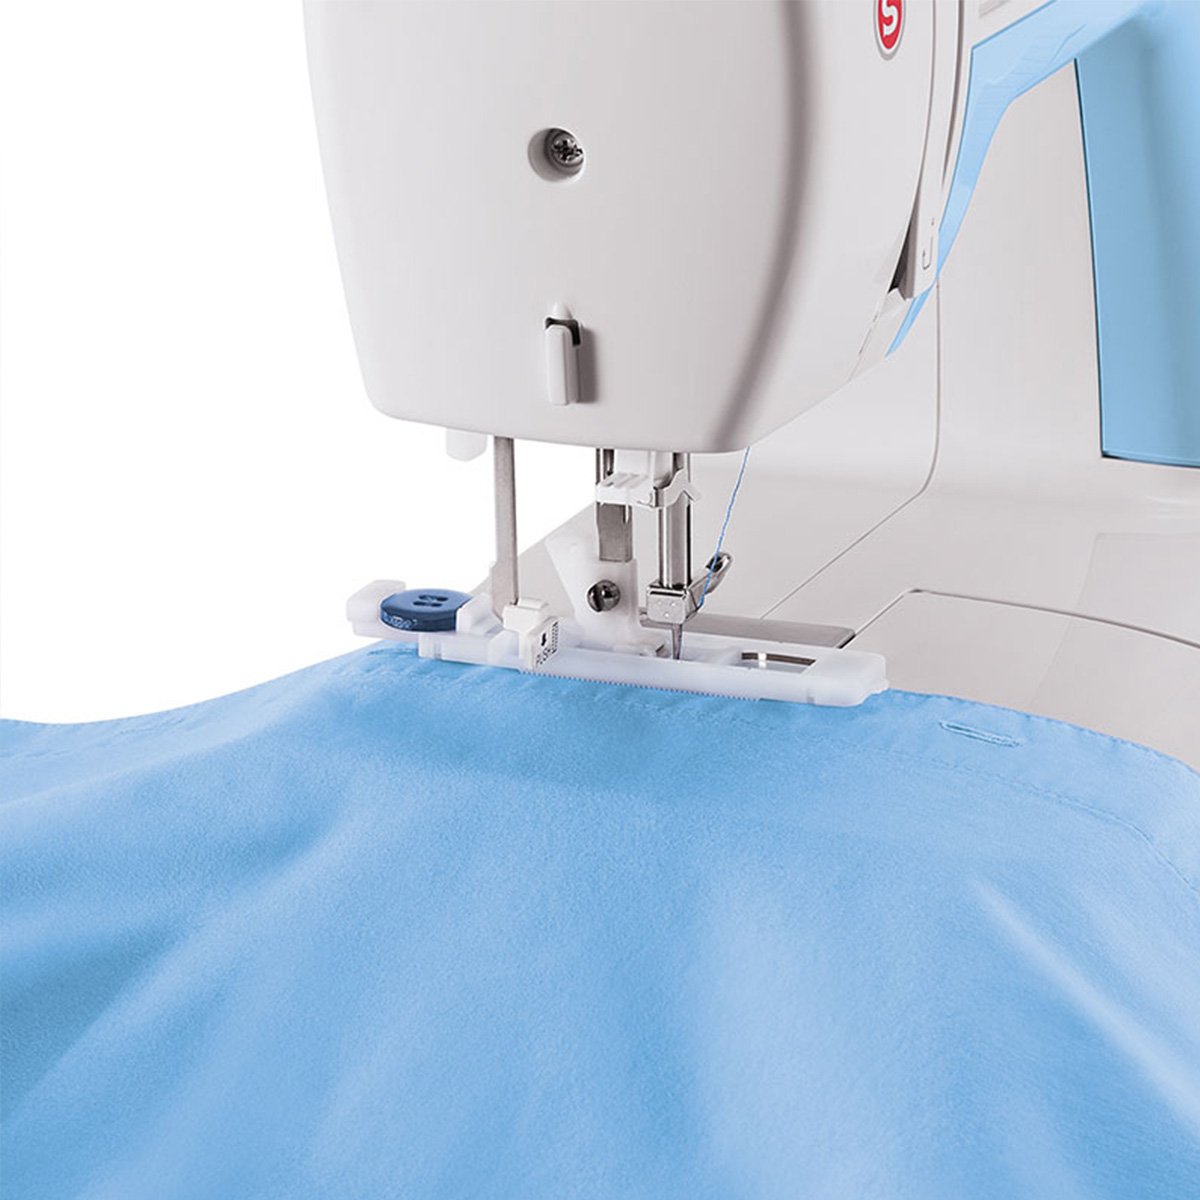 Características de las máquinas de coser electrónicas - Pineo